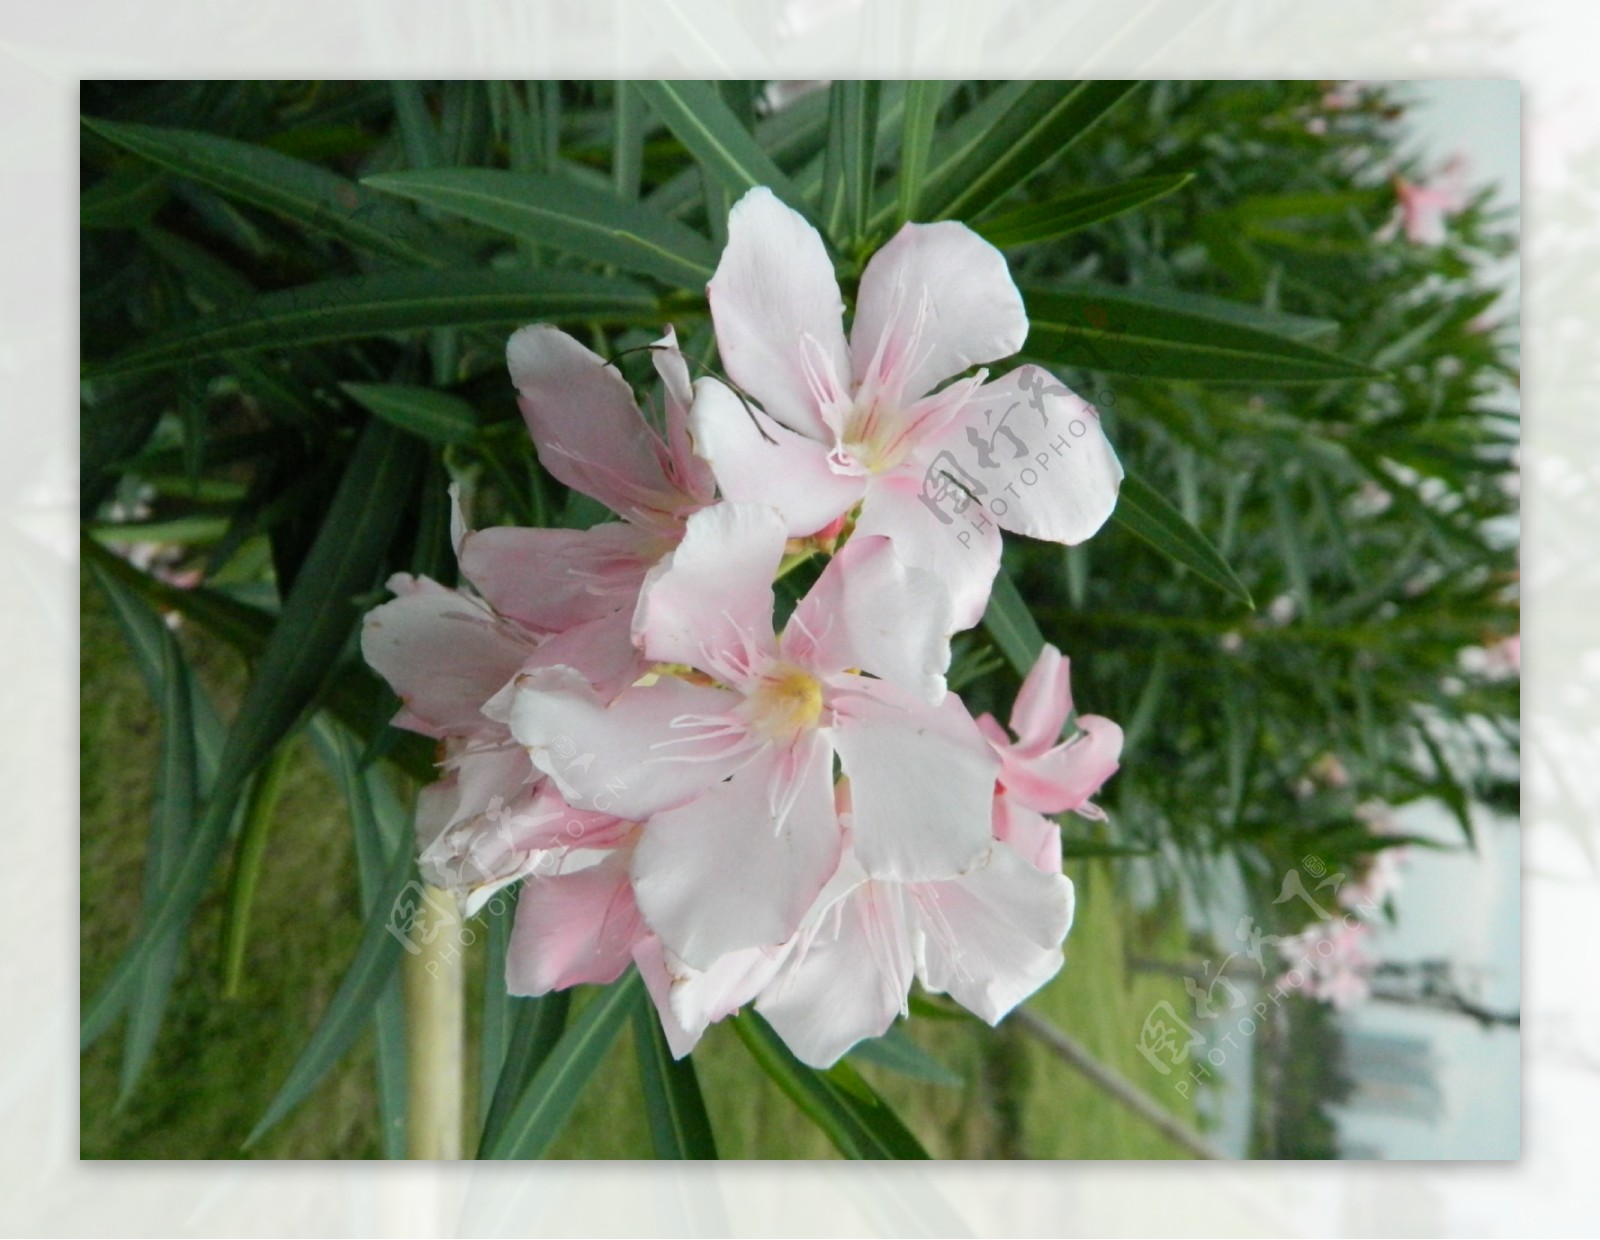 粉白色花丛